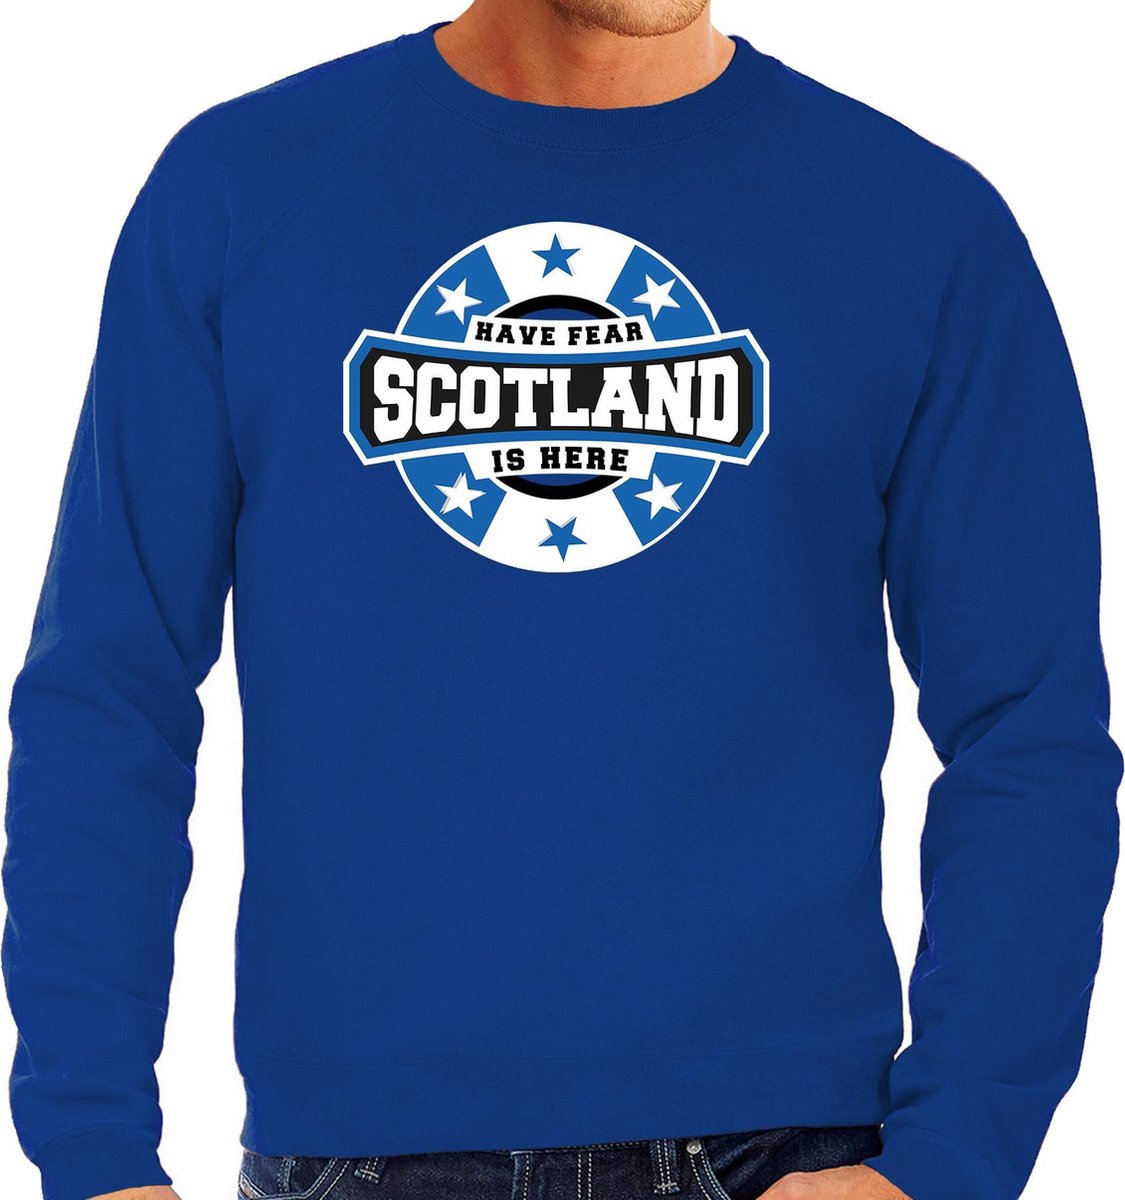 Have fear Scotland is here sweater met sterren embleem in de kleuren van de Schotse vlag - blauw - heren - Schotland supporter / Schots elftal fan trui / EK / WK / kleding L